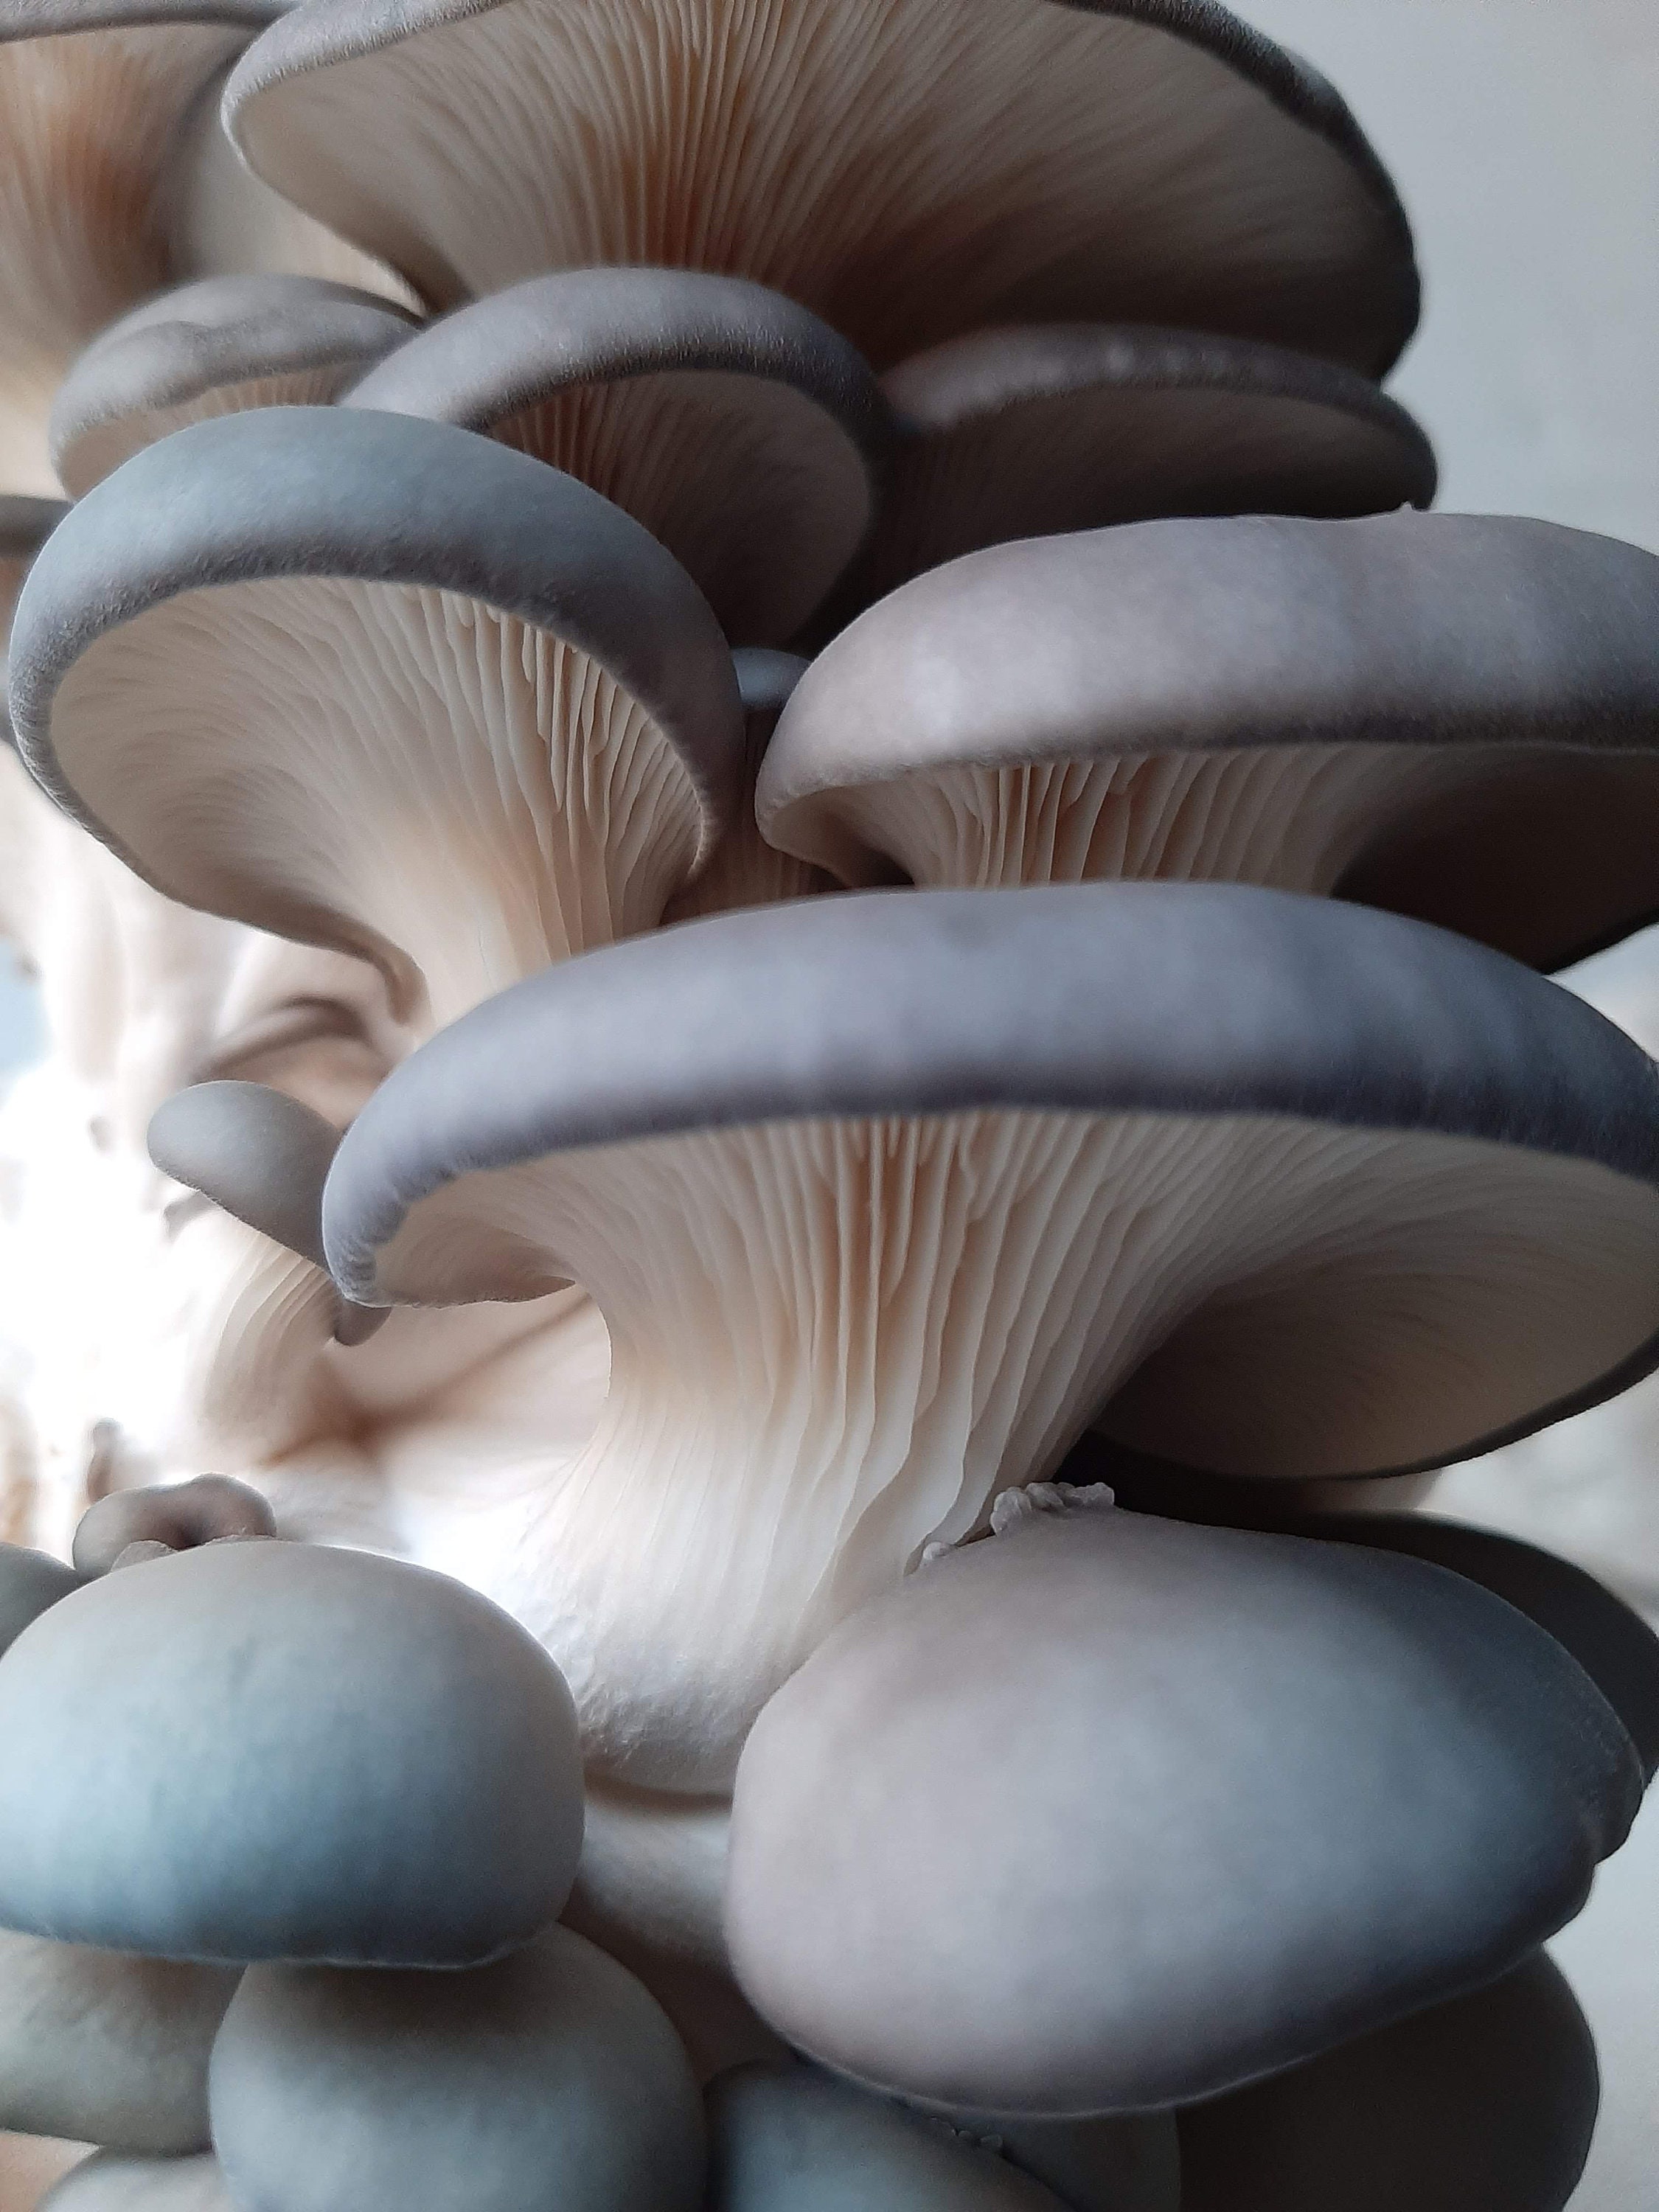 Biocoop Emporium - Idée cadeau Un kit de culture de champignons Pleurote ou  shii-take Bonne dégustation